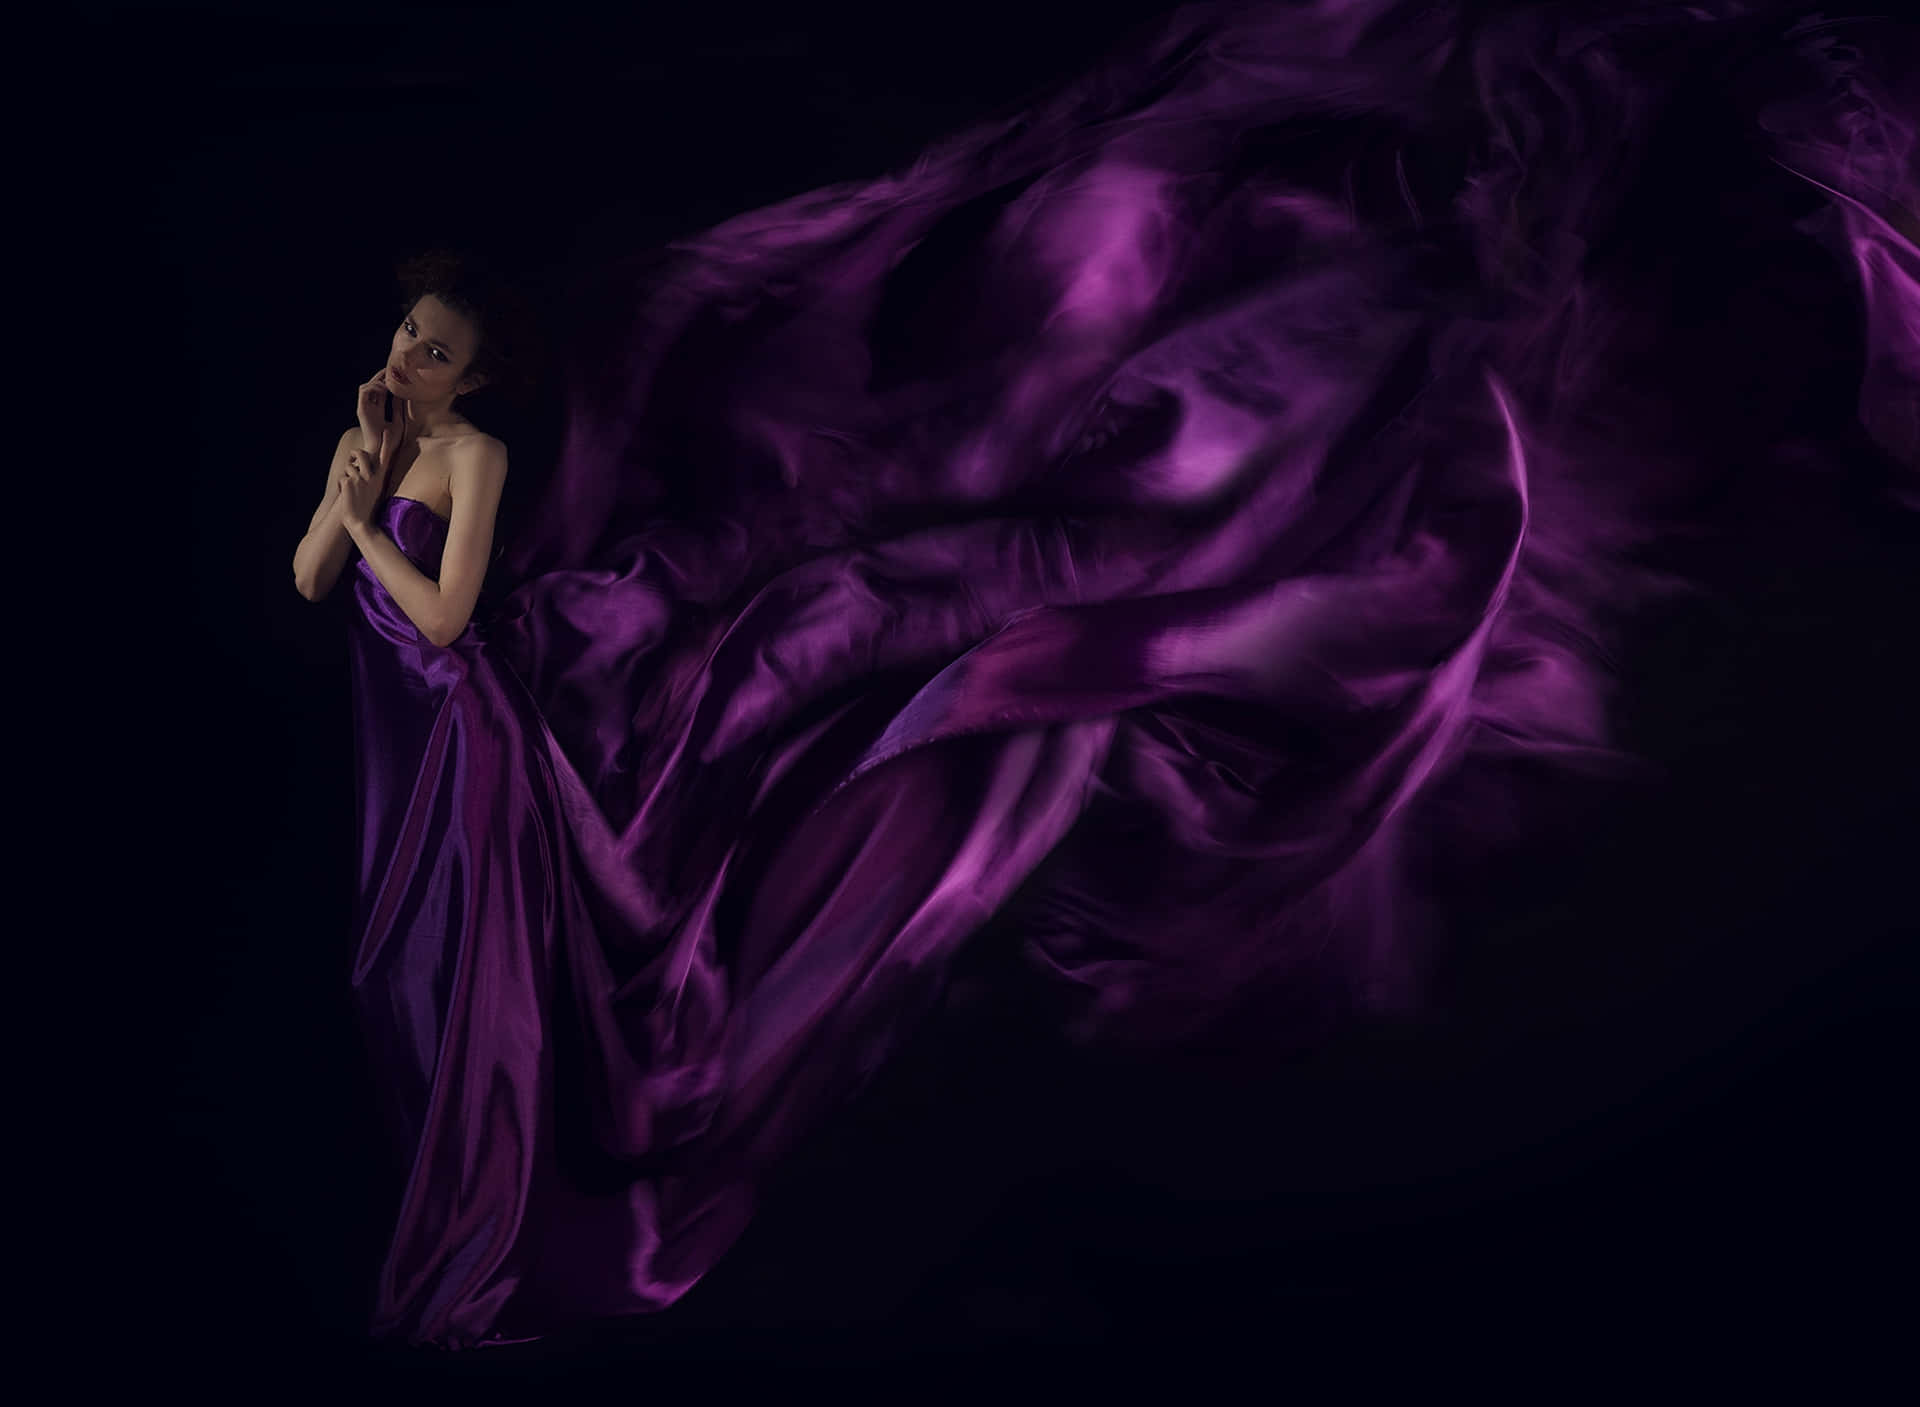 Einefrau In Einem Violetten Kleid Steht Vor Einem Schwarzen Hintergrund.